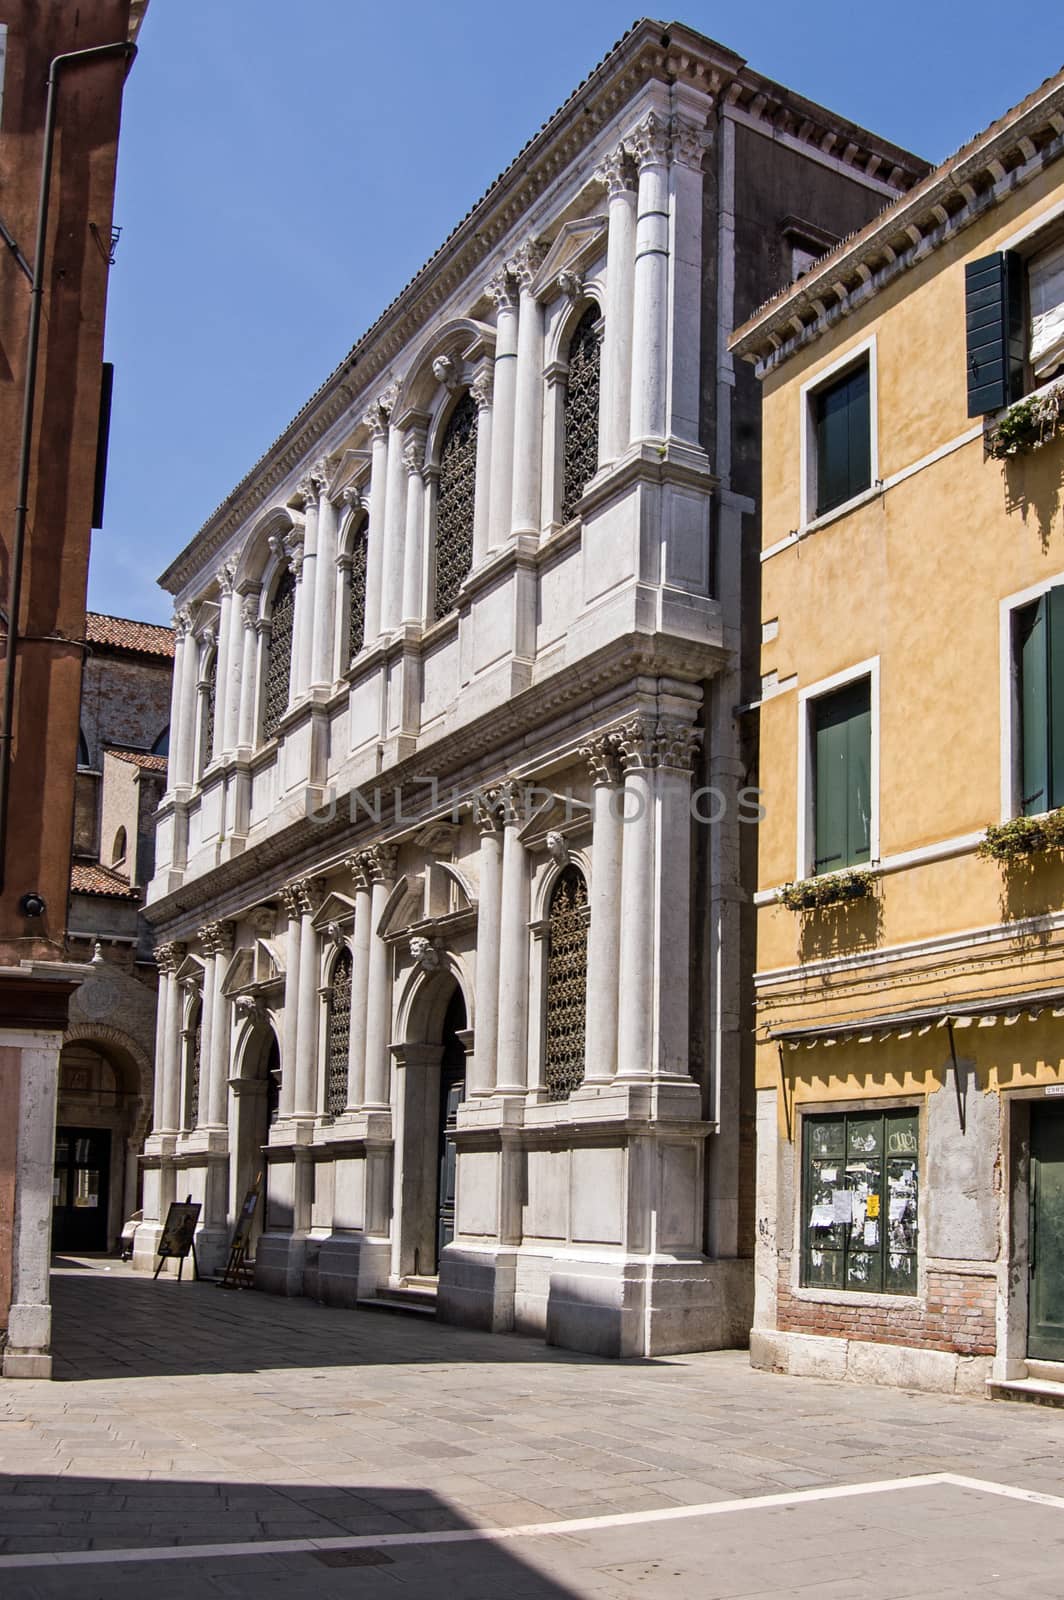 Scuola Grande dei Carmini, Venice by BasPhoto